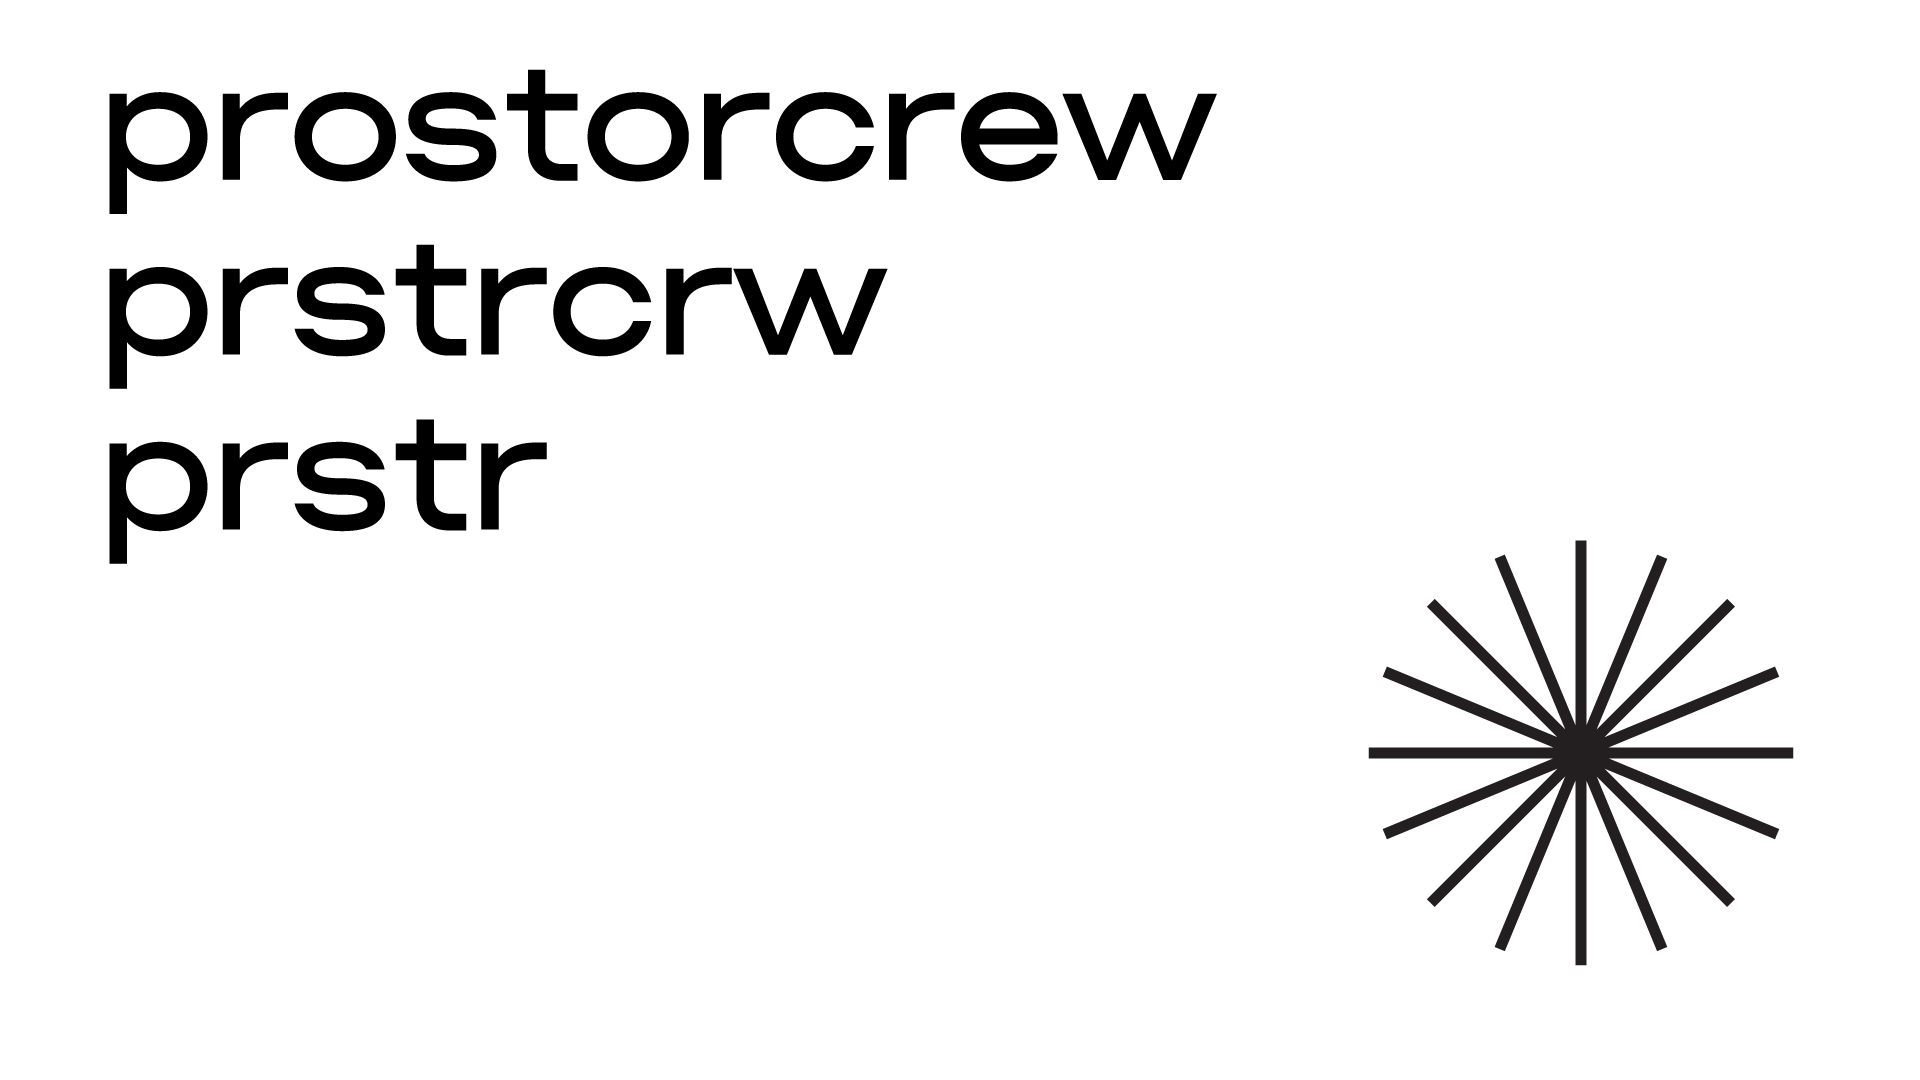 New Logo and Identity for Prostorcrew by Roma Erohnovich